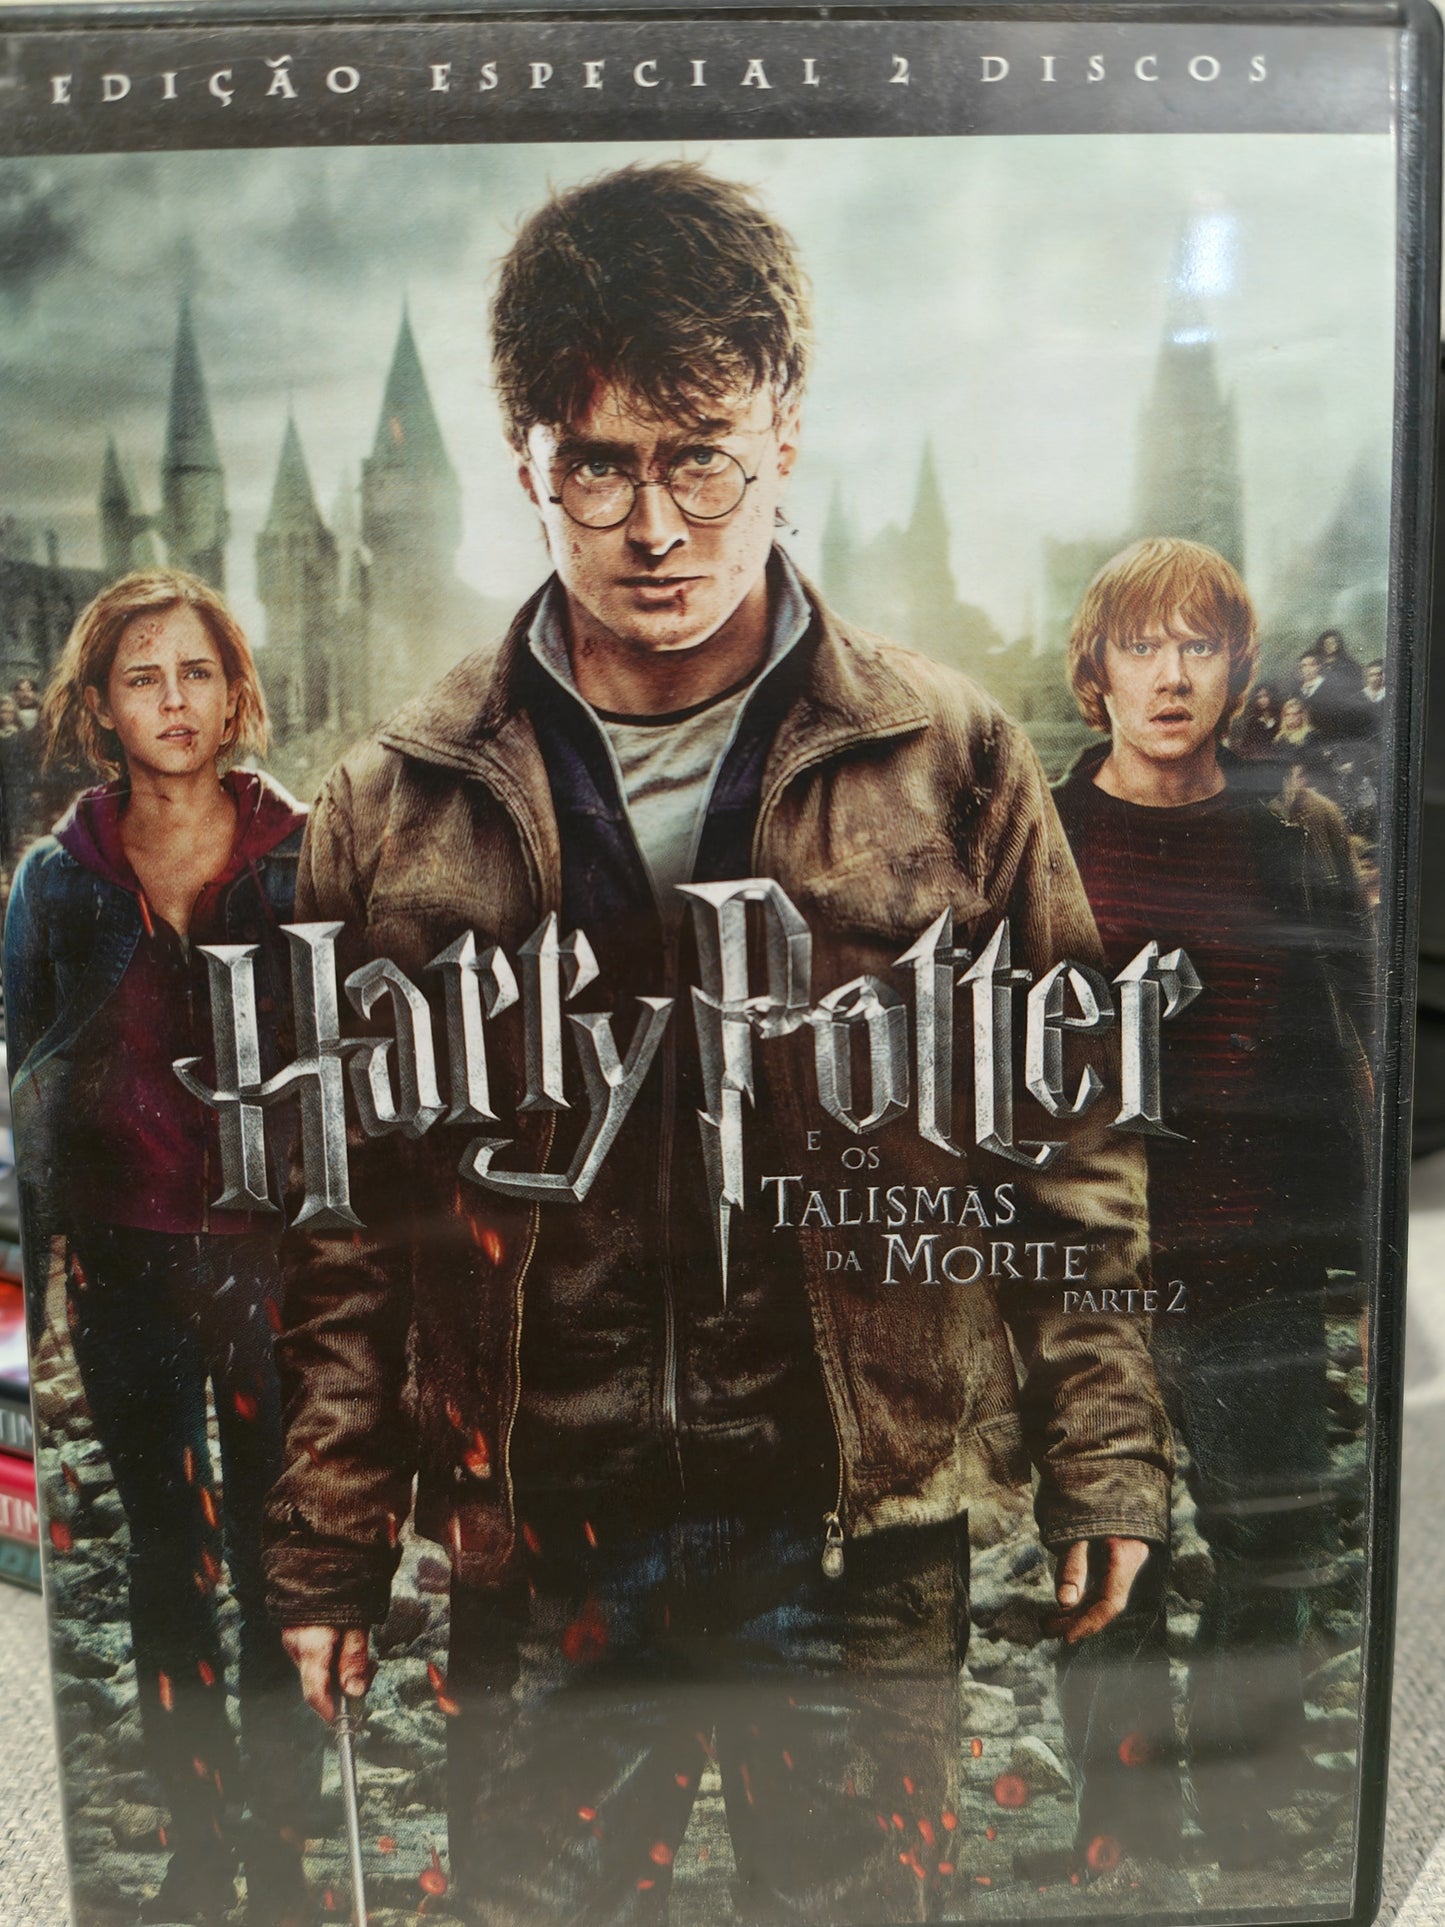 DVD Harry Potter E Os Talismàs Da Morte Parte 2 Edição Especial 2 CD´s - USADO